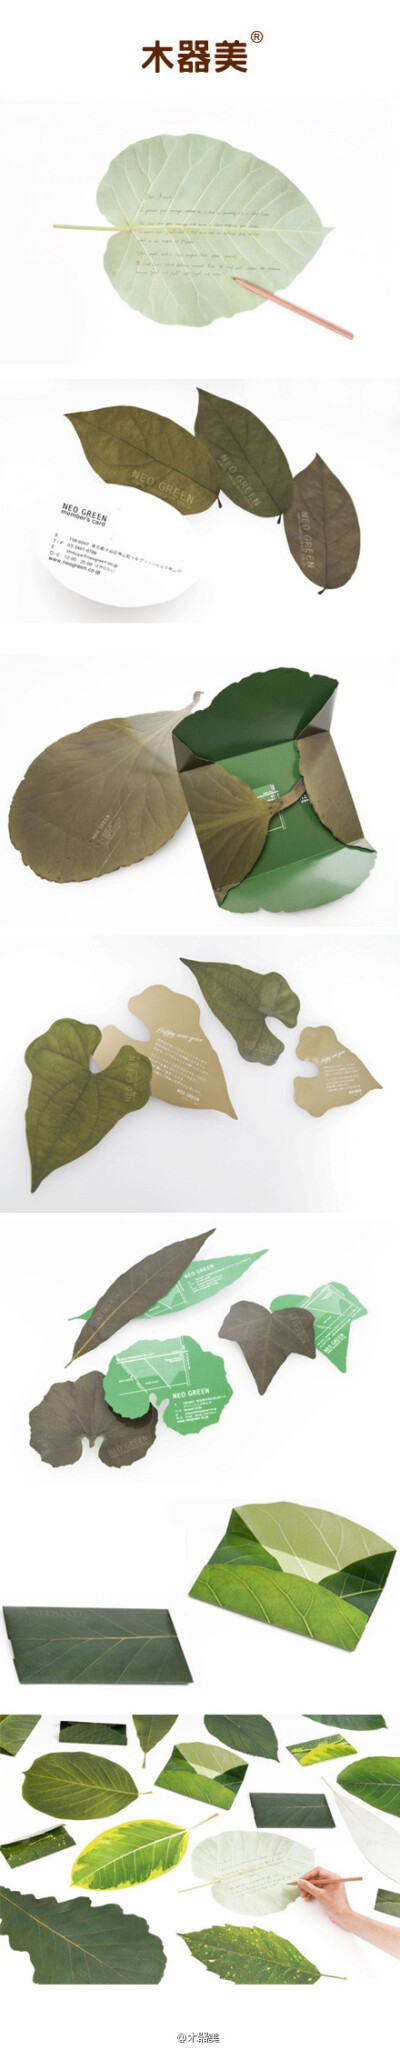 选一片寄给远方的亲人。Leaf Letters，来自neo-green和edingpost两家设计工作室的创意产品，但不是真的树叶噢。